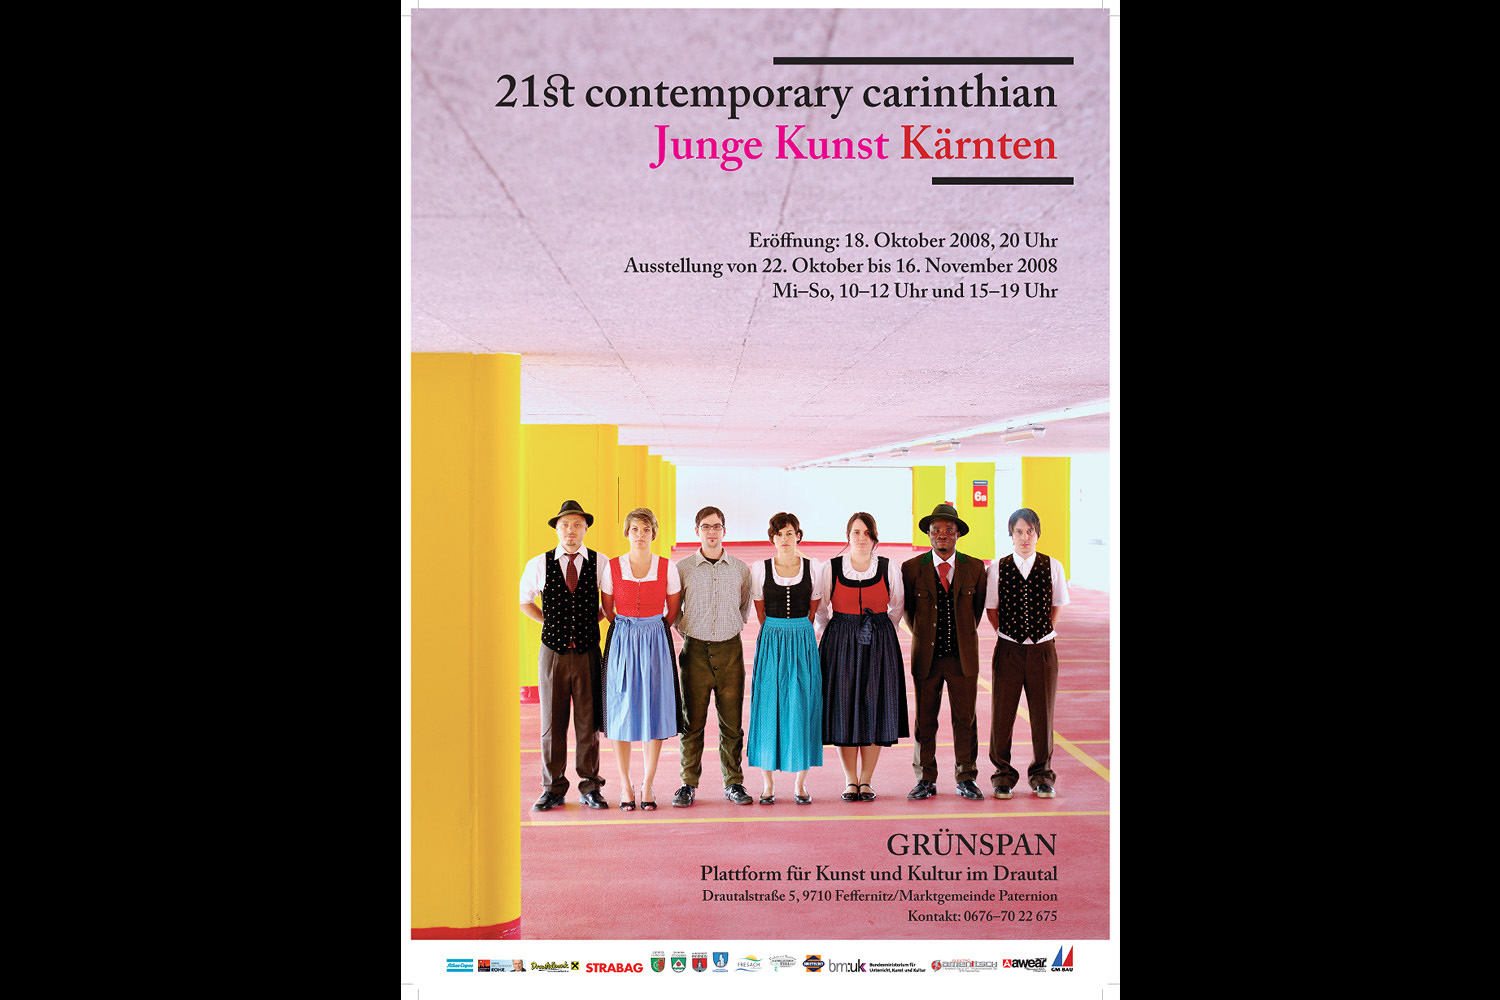 Plakatfotografie für Grünspan (Plattform von Kunst und Kultur im Drautal) für "21st contemporary carinthian - Junge Kunst Kärnten"